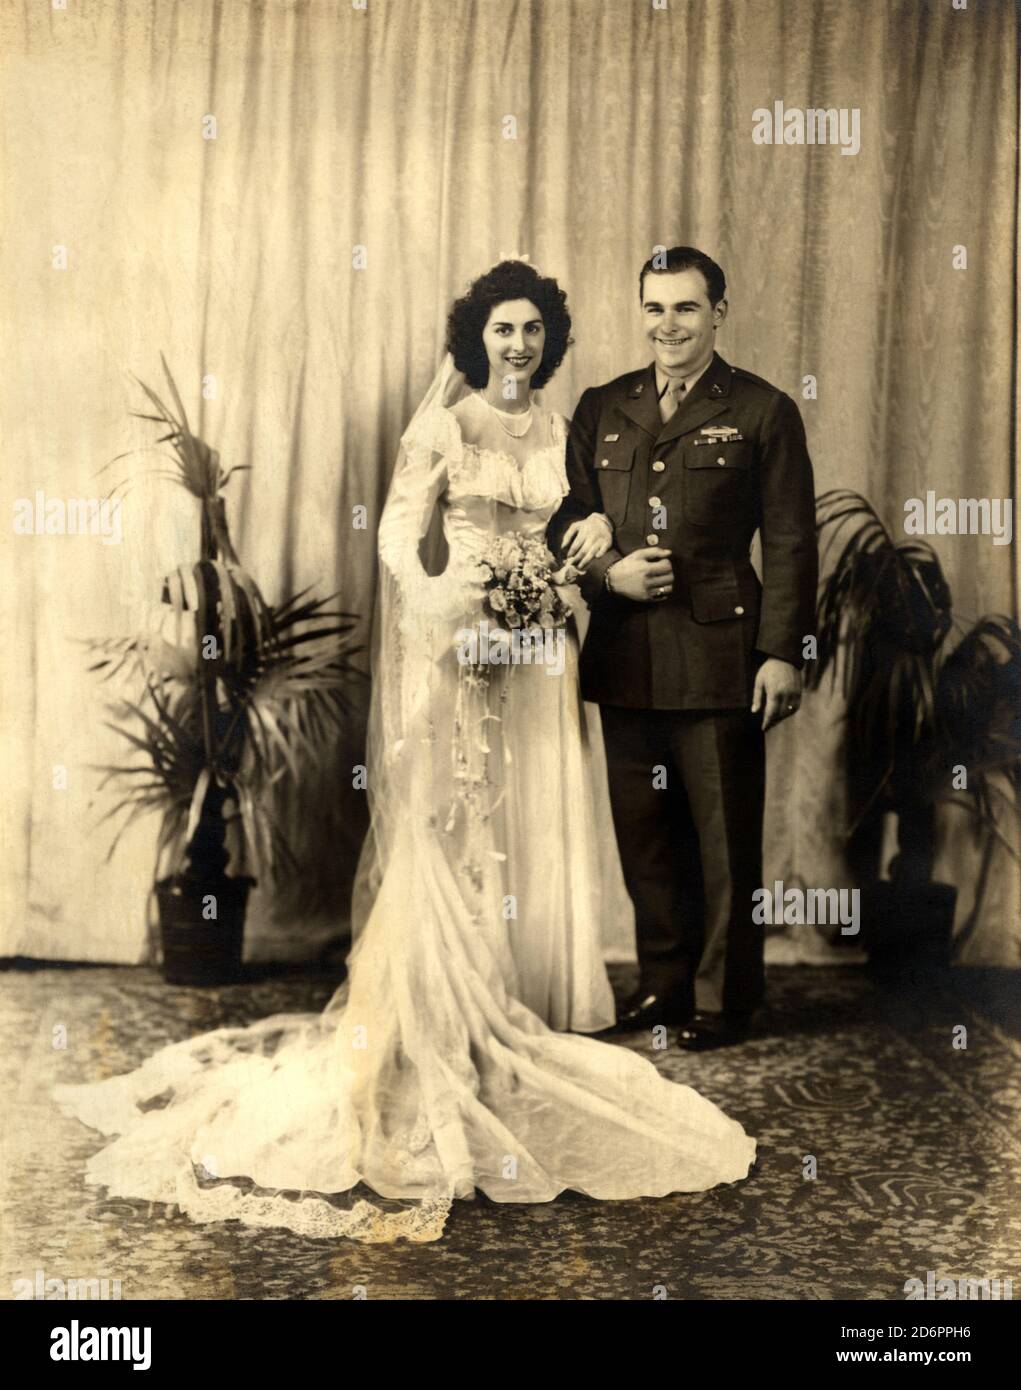 1946 Ca, BRESCIA, ITALIEN: Die Ehe von BETTY & CHARLIE, sie war aus der norditalienischen Stadt Brescia und er aus DEN VEREINIGTEN STAATEN von AMERIKA während des Militärdienstes kurz nach dem Zweiten Weltkrieg in Italien. Das Paar traferred sofort in US - NOZZE - abito da SPOSA - HOCHZEITSKLEID PARTY - BRAUT - cerimonia - FOTO STORICHE - GESCHICHTE FOTOS - XX JAHRHUNDERT - NOVECENTO - coppia di sposi - militärische Uniform - uniforme vestito militare - Thulle - Tüll - strascico - FAMIGLIA - FAMILIE - Marito e moglie - Ehefrau und Ehemann - Festa - Party - ricevimento - velo - Schleier - Blumen - fiori - f Stockfoto